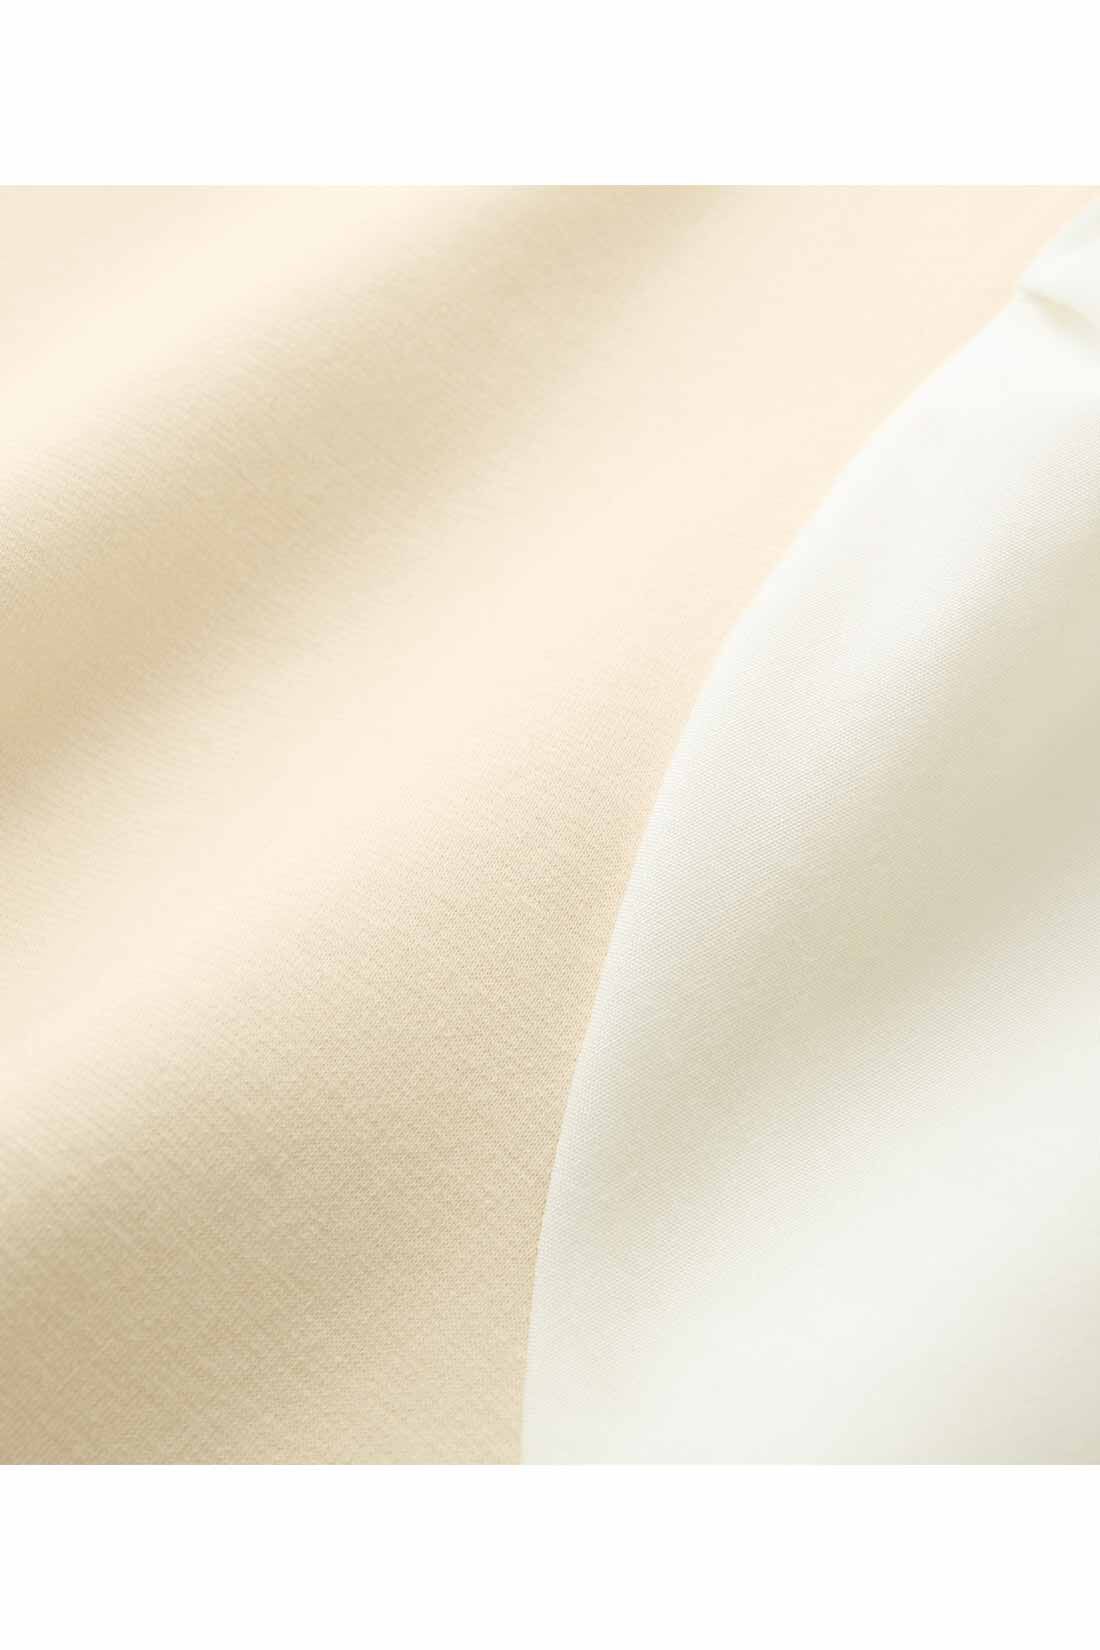 IEDIT[イディット]　きちんとシャツ見えしてらくちん ふんわり異素材袖の抗菌防臭カットソートップス〈アイボリー〉|※お届けするカラーとは異なります。